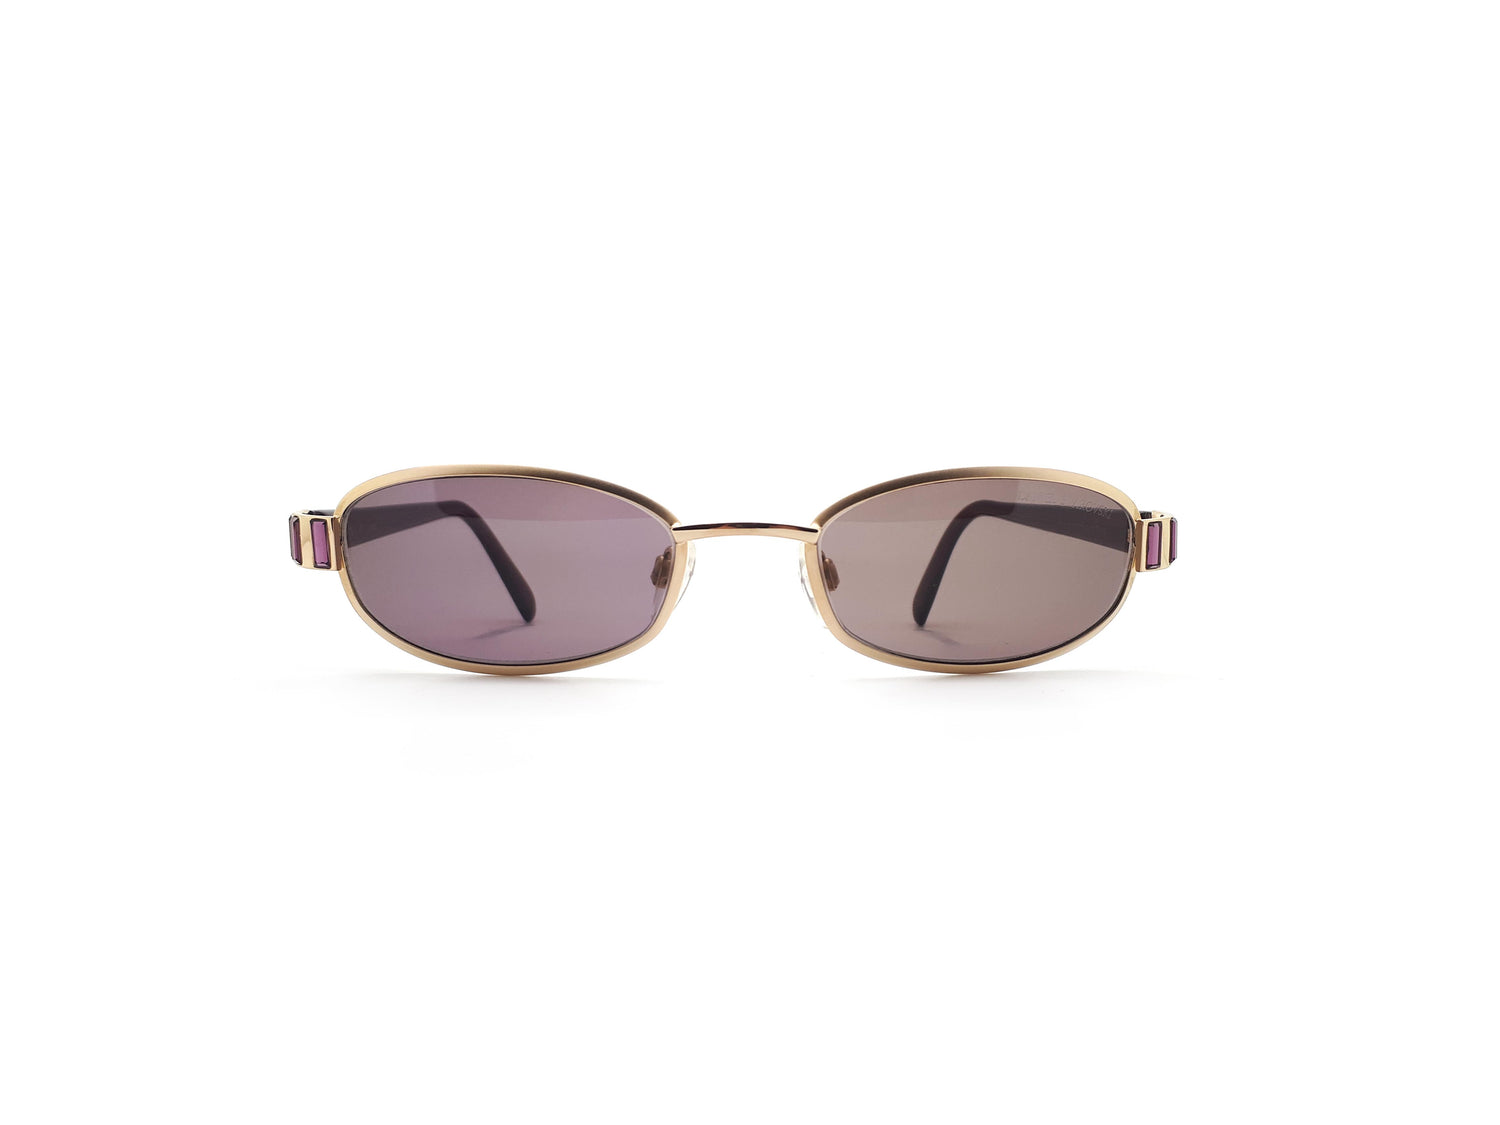 Gianni Versace Sunglasses Mod 372/DM, Vintage 1990’s